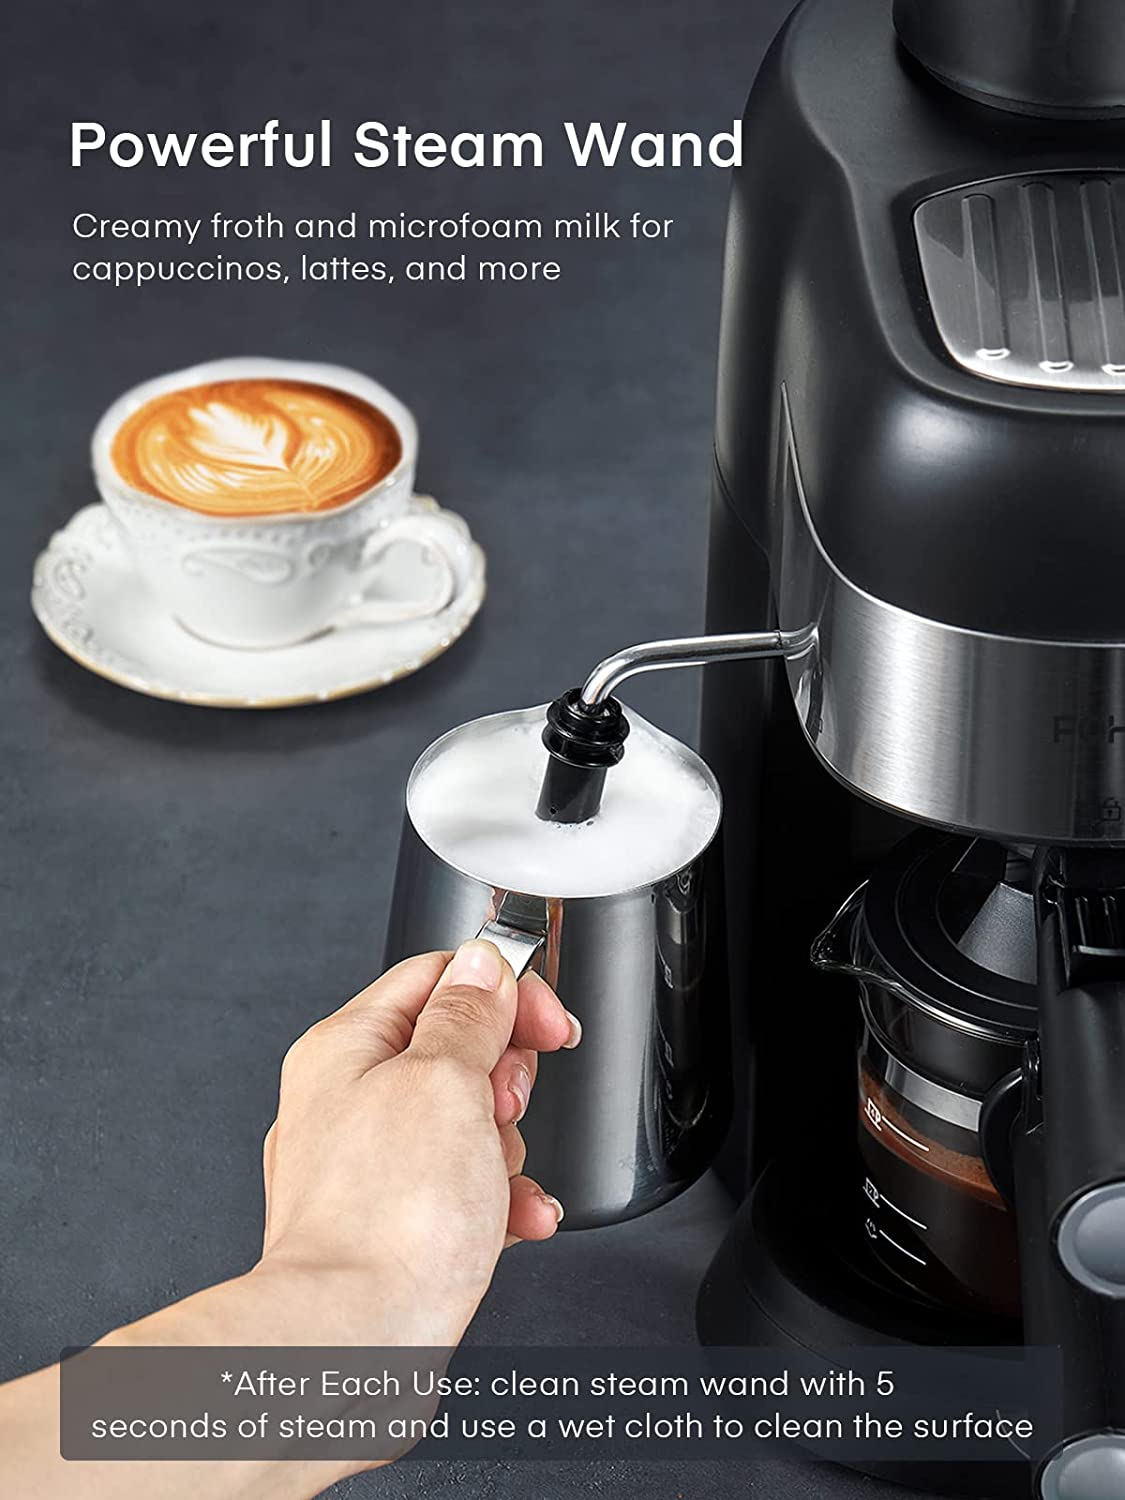 Espresso Coffee Maker 19 Bar Machine Milk Froth For Latte Mocha Cappuccino  Tank